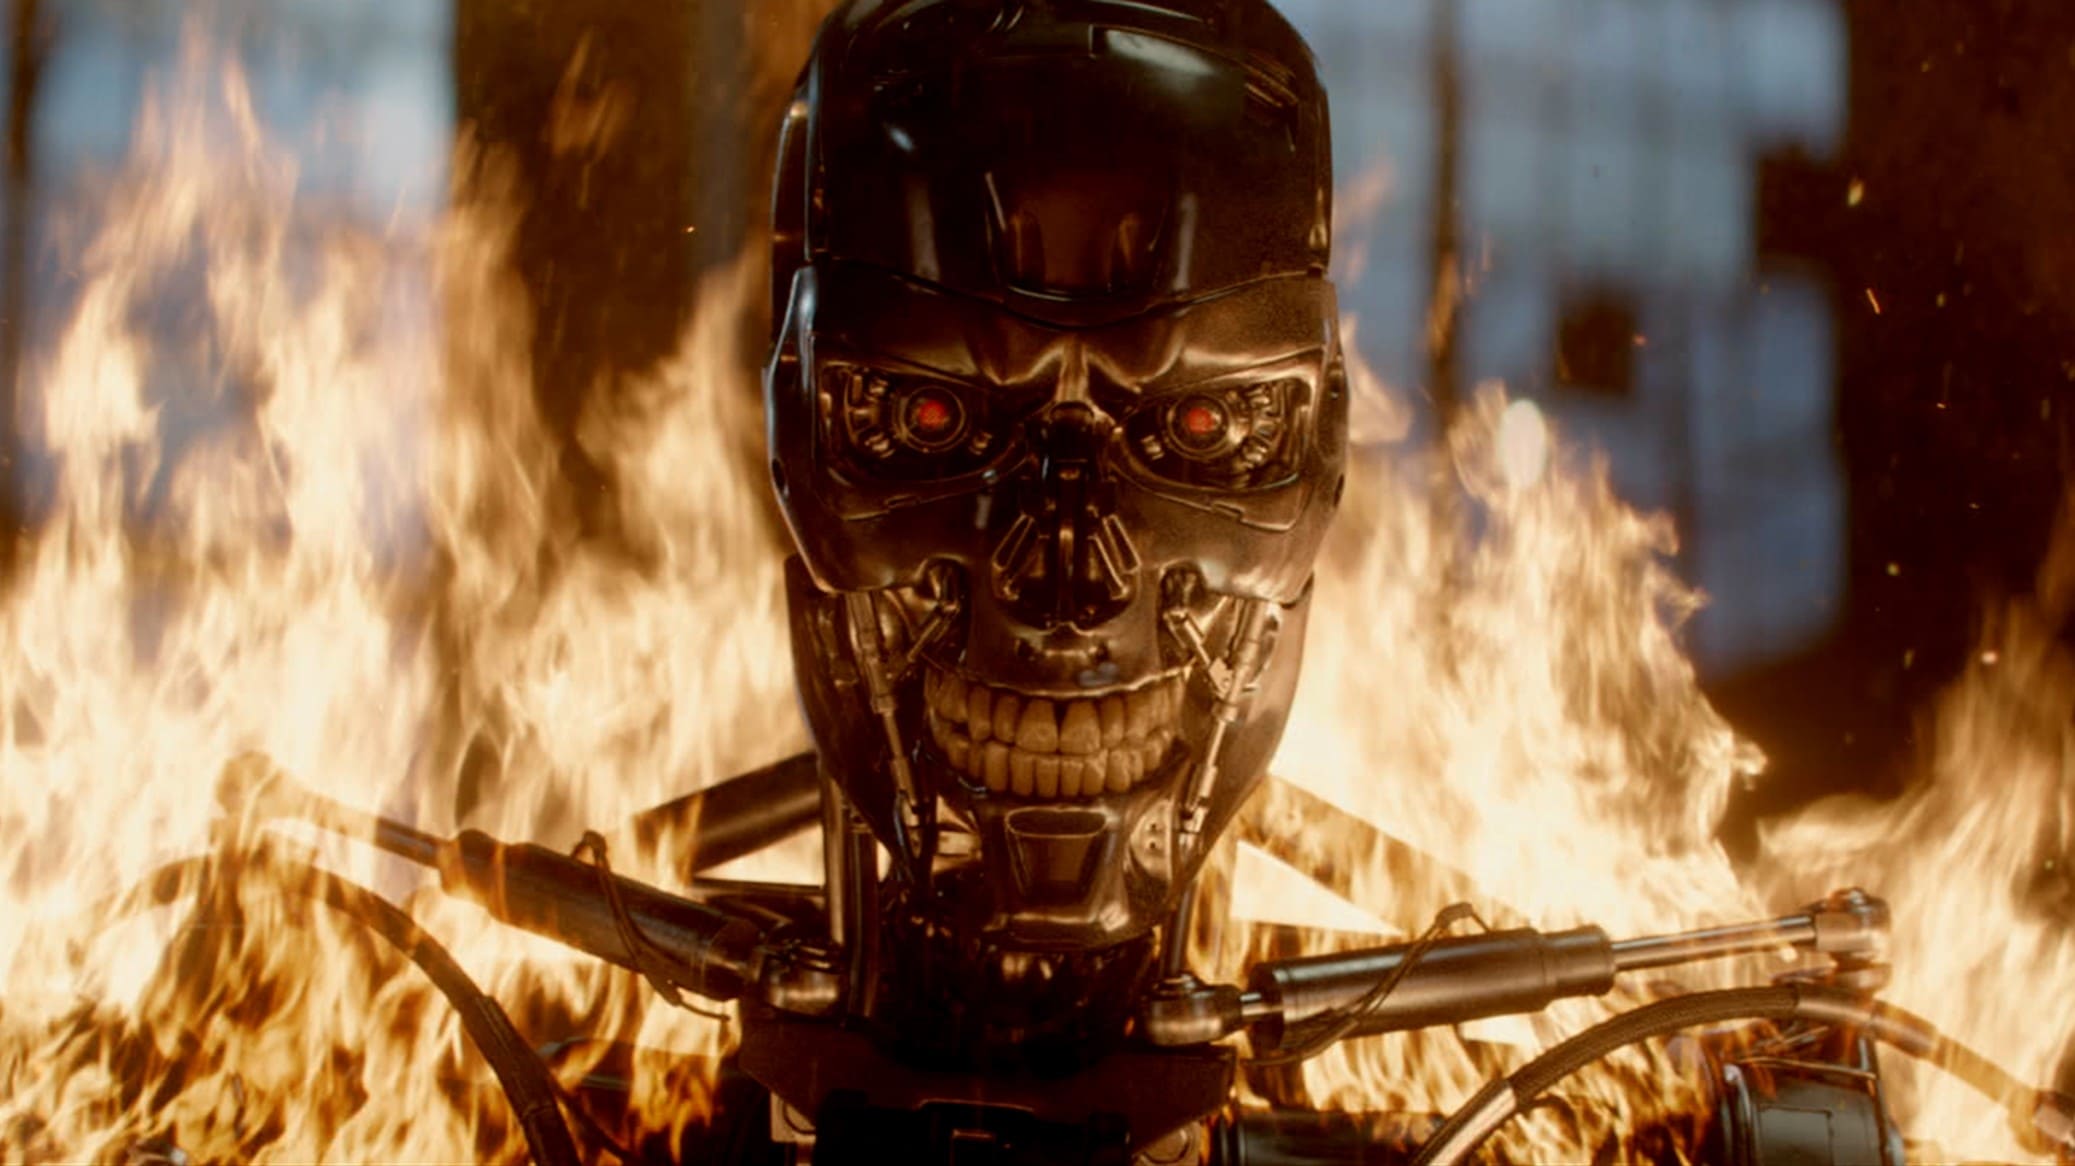 Terminator 5: Génesis